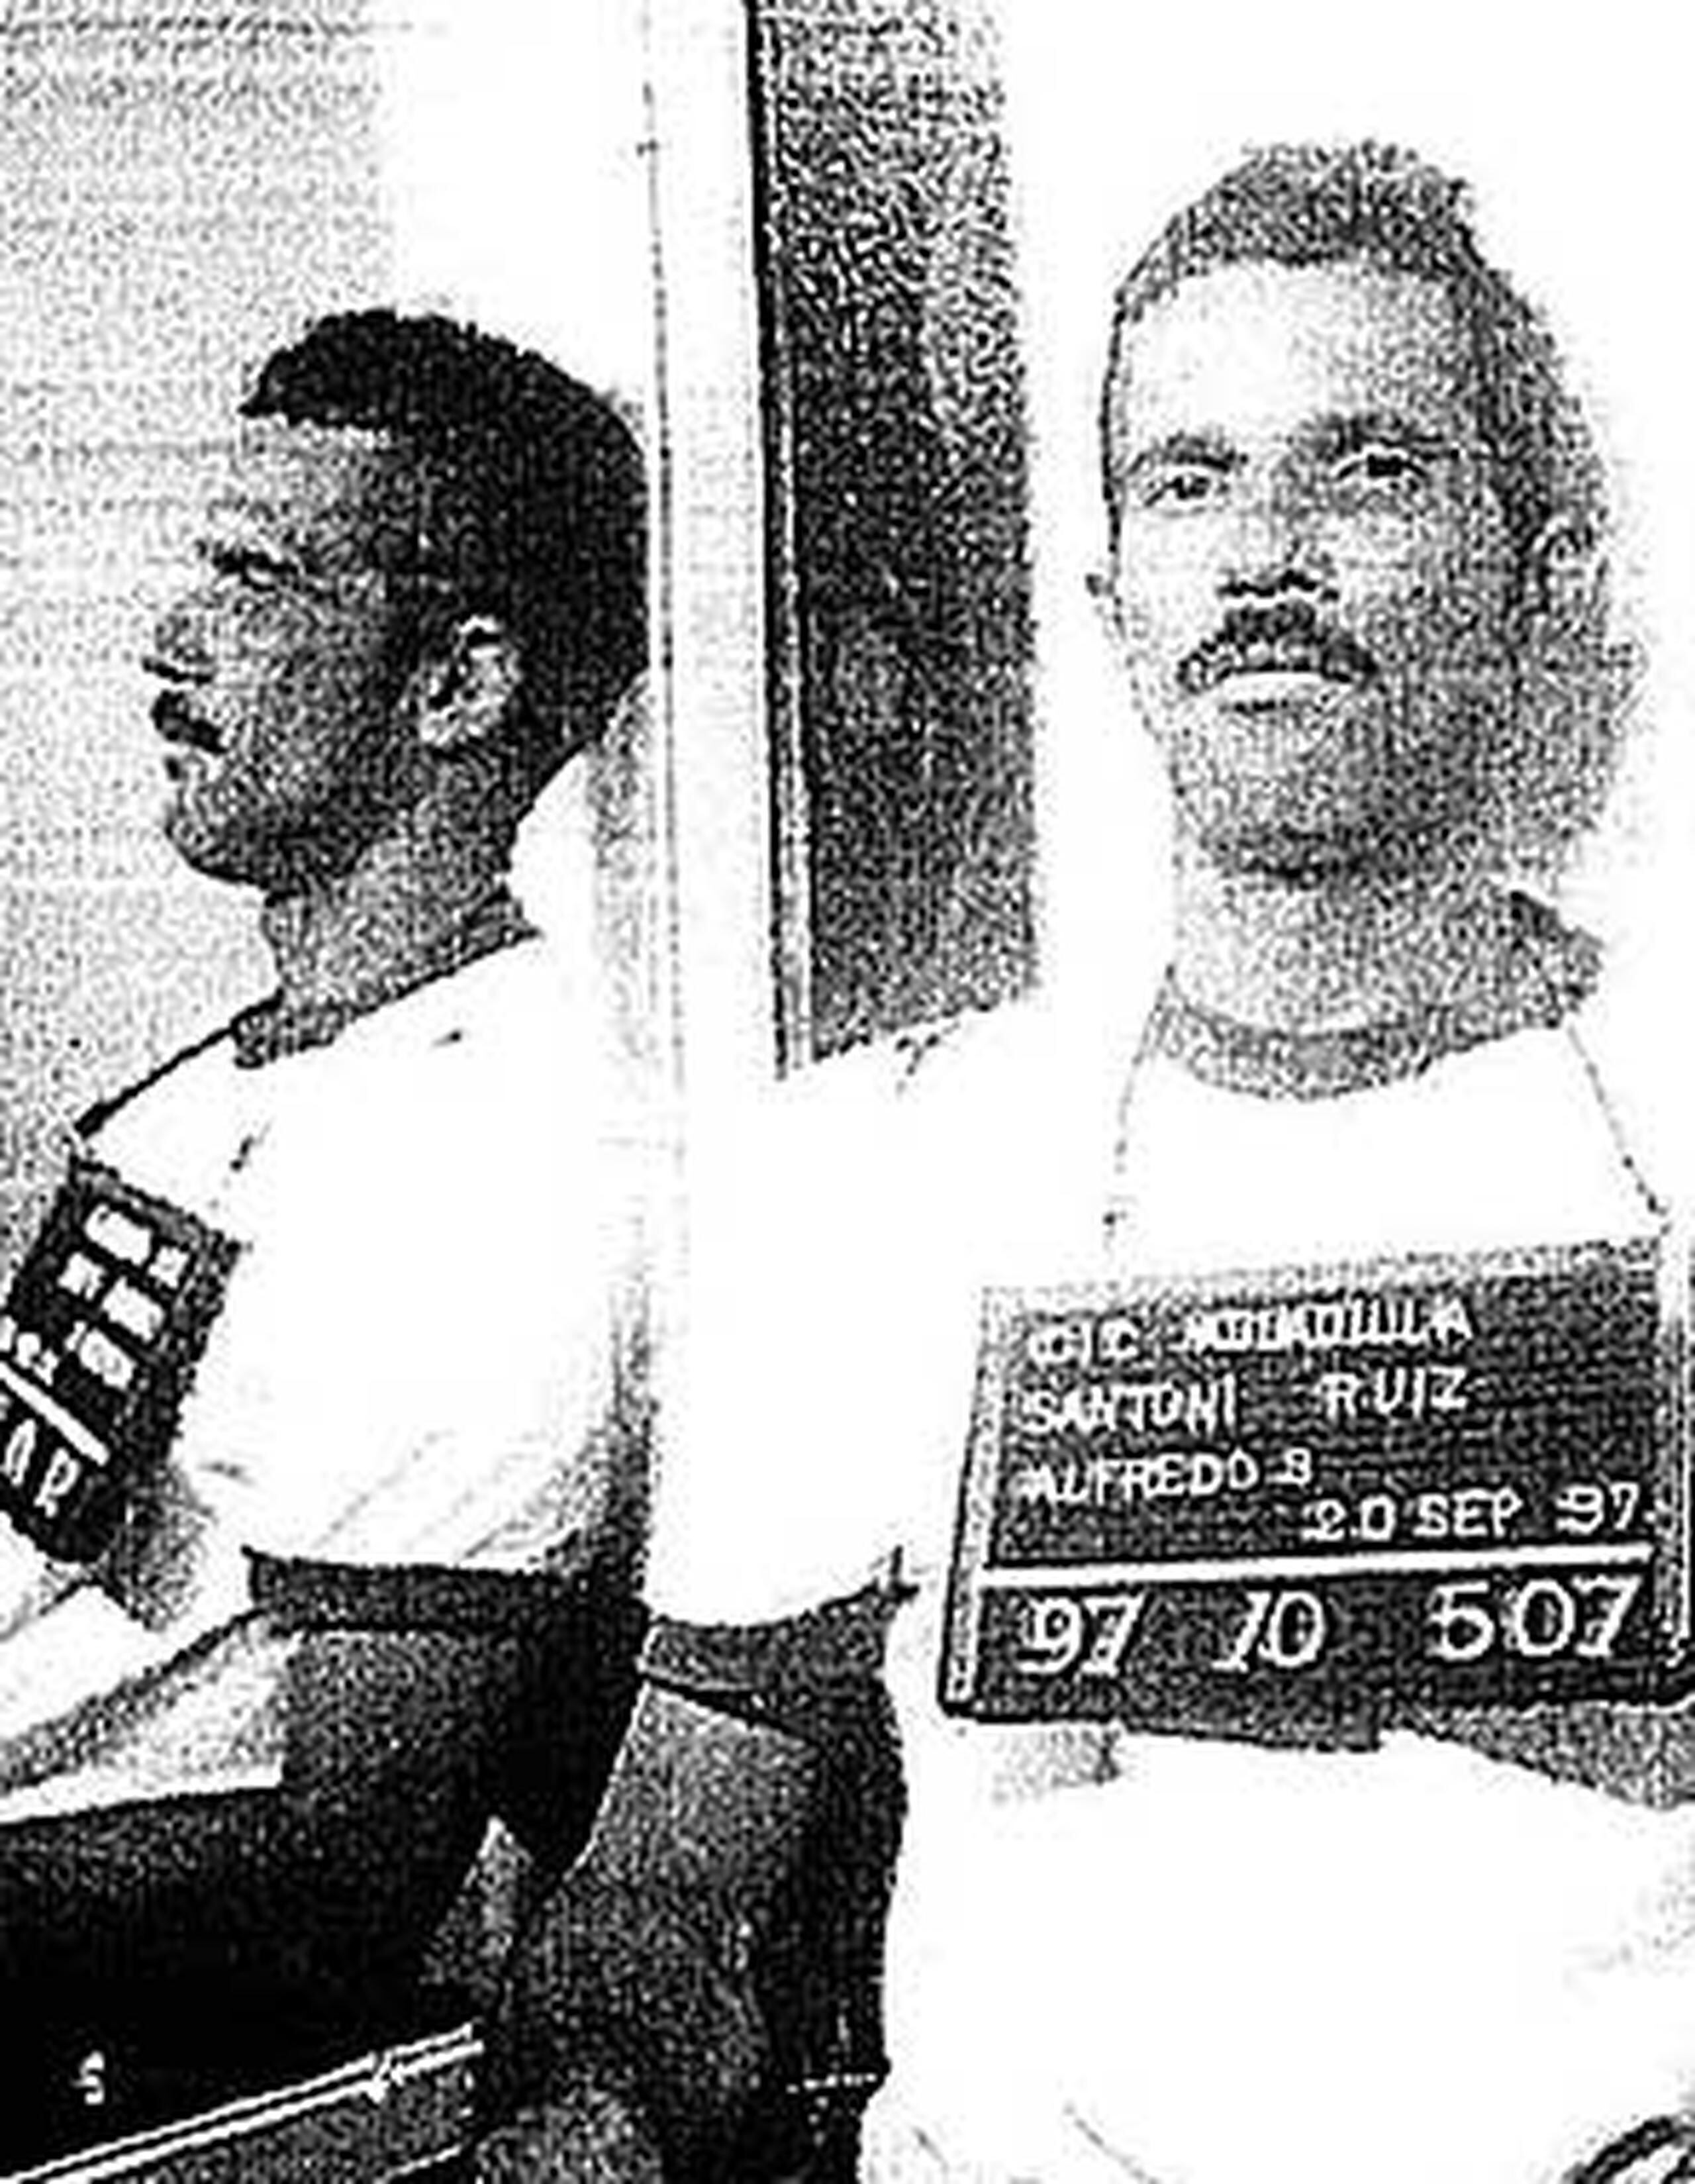 Alfredo Santoni Ruiz había sido fichado en 1997 por un accidente de tránsito en el que murió una mujer. (Archivo)